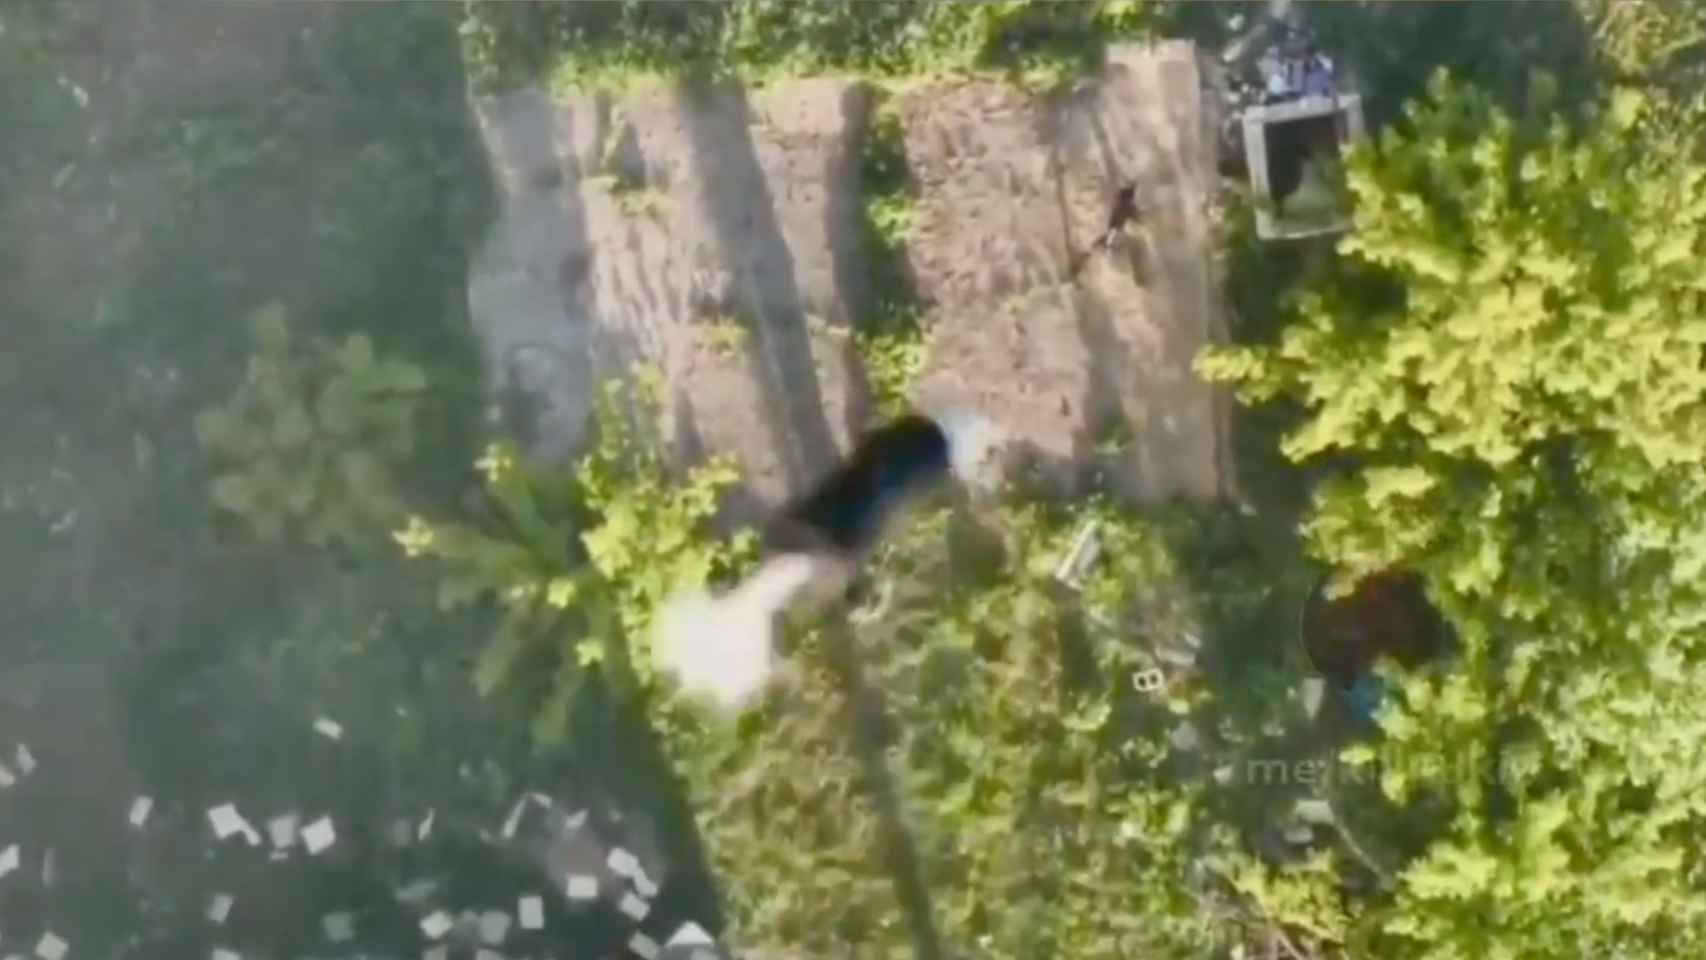 El impactante vídeo de un dron ucraniano lanzando una granada sobre un soldado ruso thumbnail